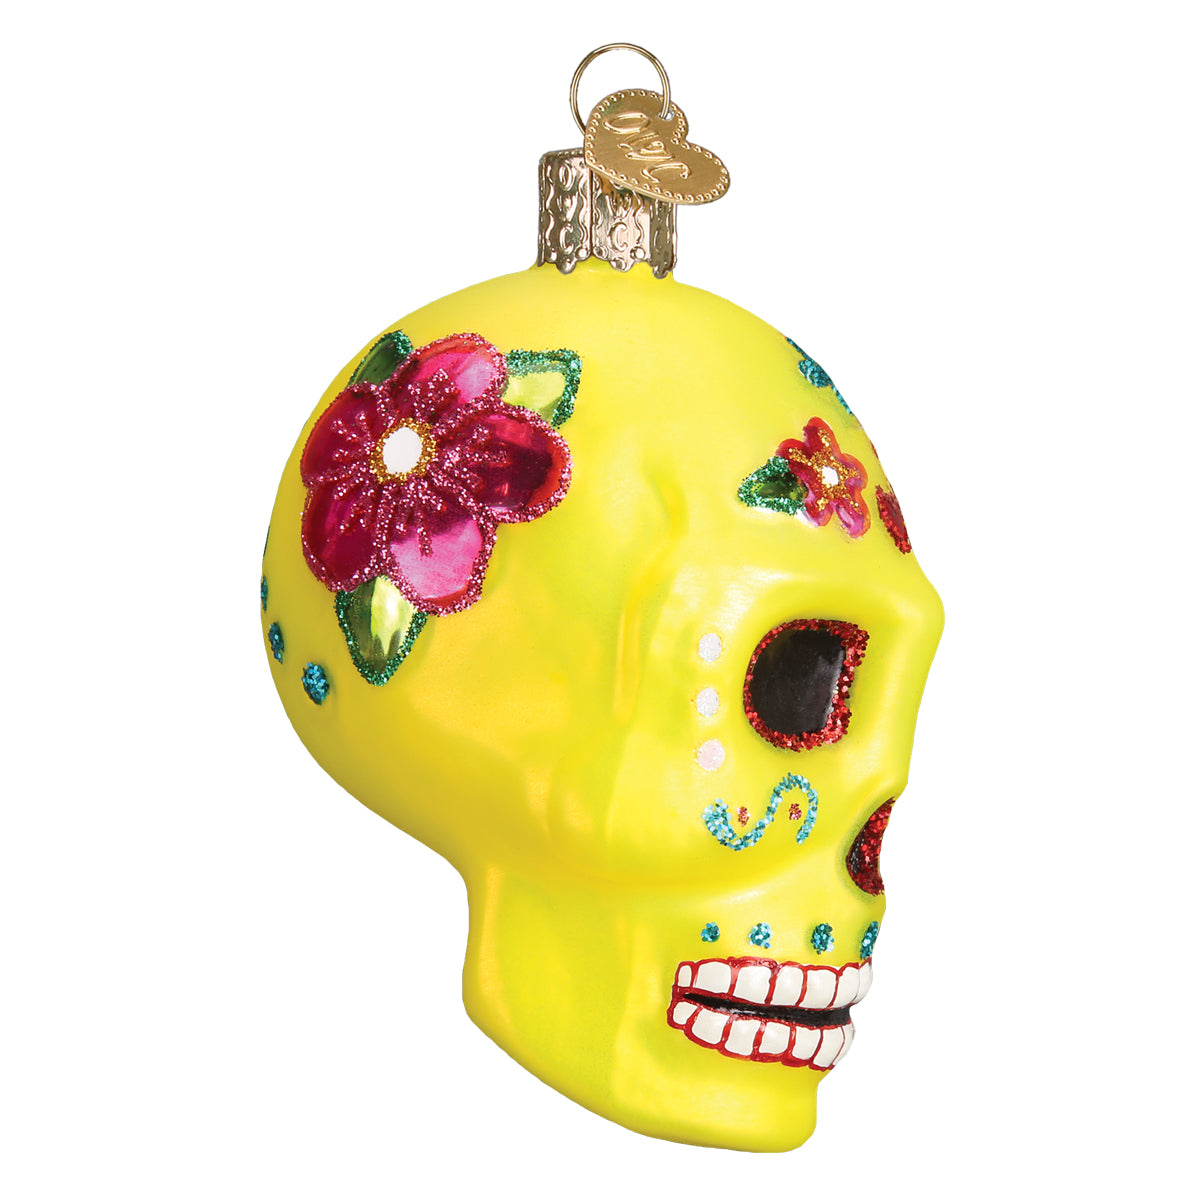 Skull ornament - .de